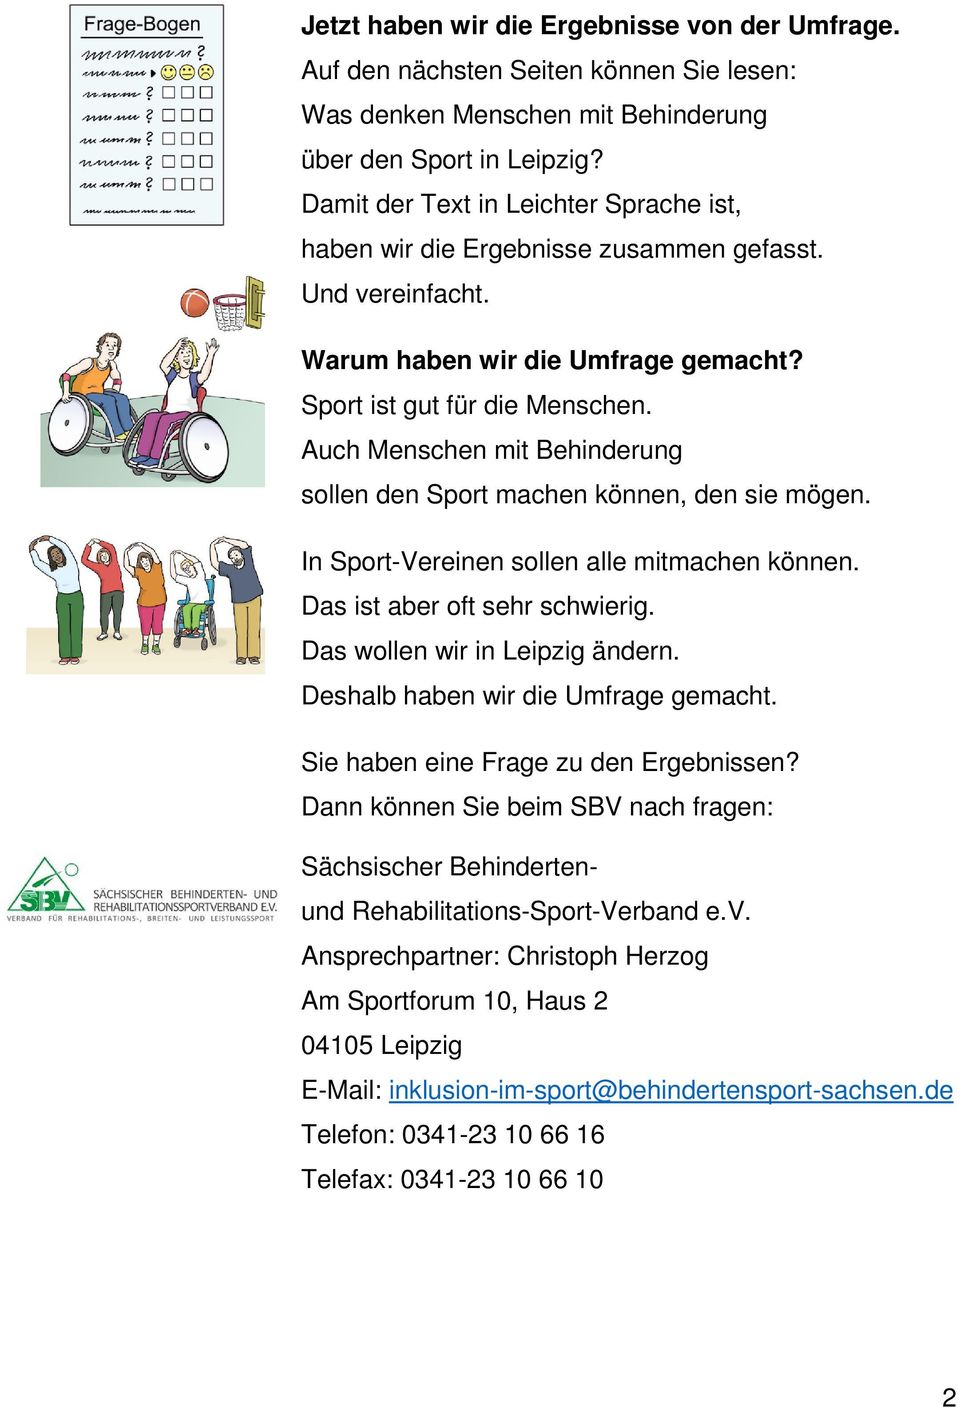 Auch Menschen mit Behinderung sollen den Sport machen können, den sie mögen. In Sport-Vereinen sollen alle mitmachen können. Das ist aber oft sehr schwierig. Das wollen wir in Leipzig ändern.